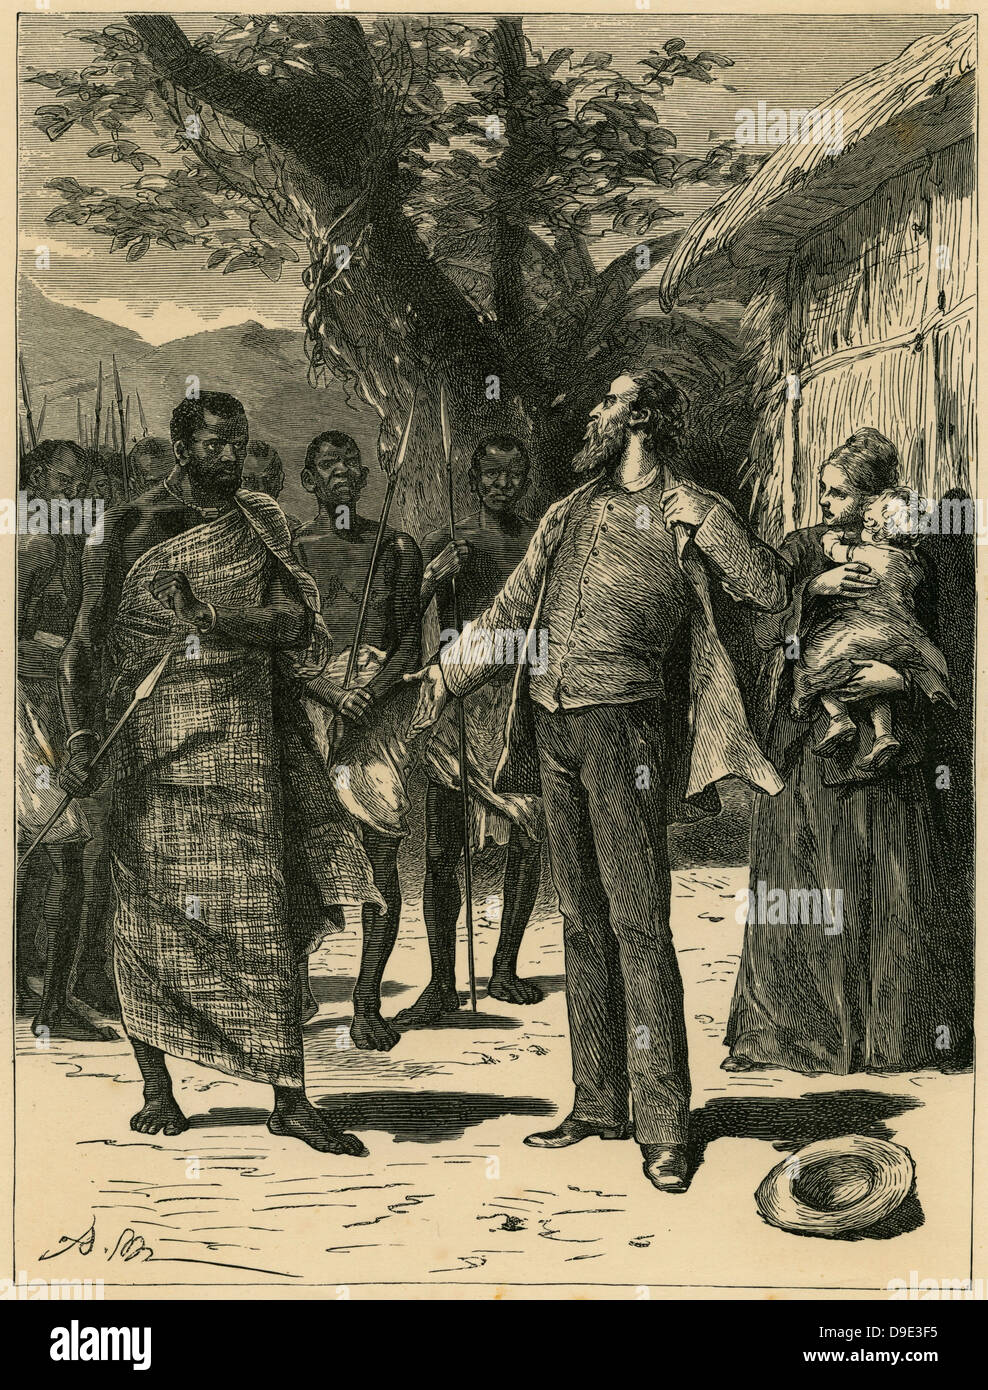 Robert Moffat (1795-1883) schottischer Missionar durch eine Stammes-Chiefn Betschuanaland Muffen. Schwiegervater von David Livingstone. Stockfoto